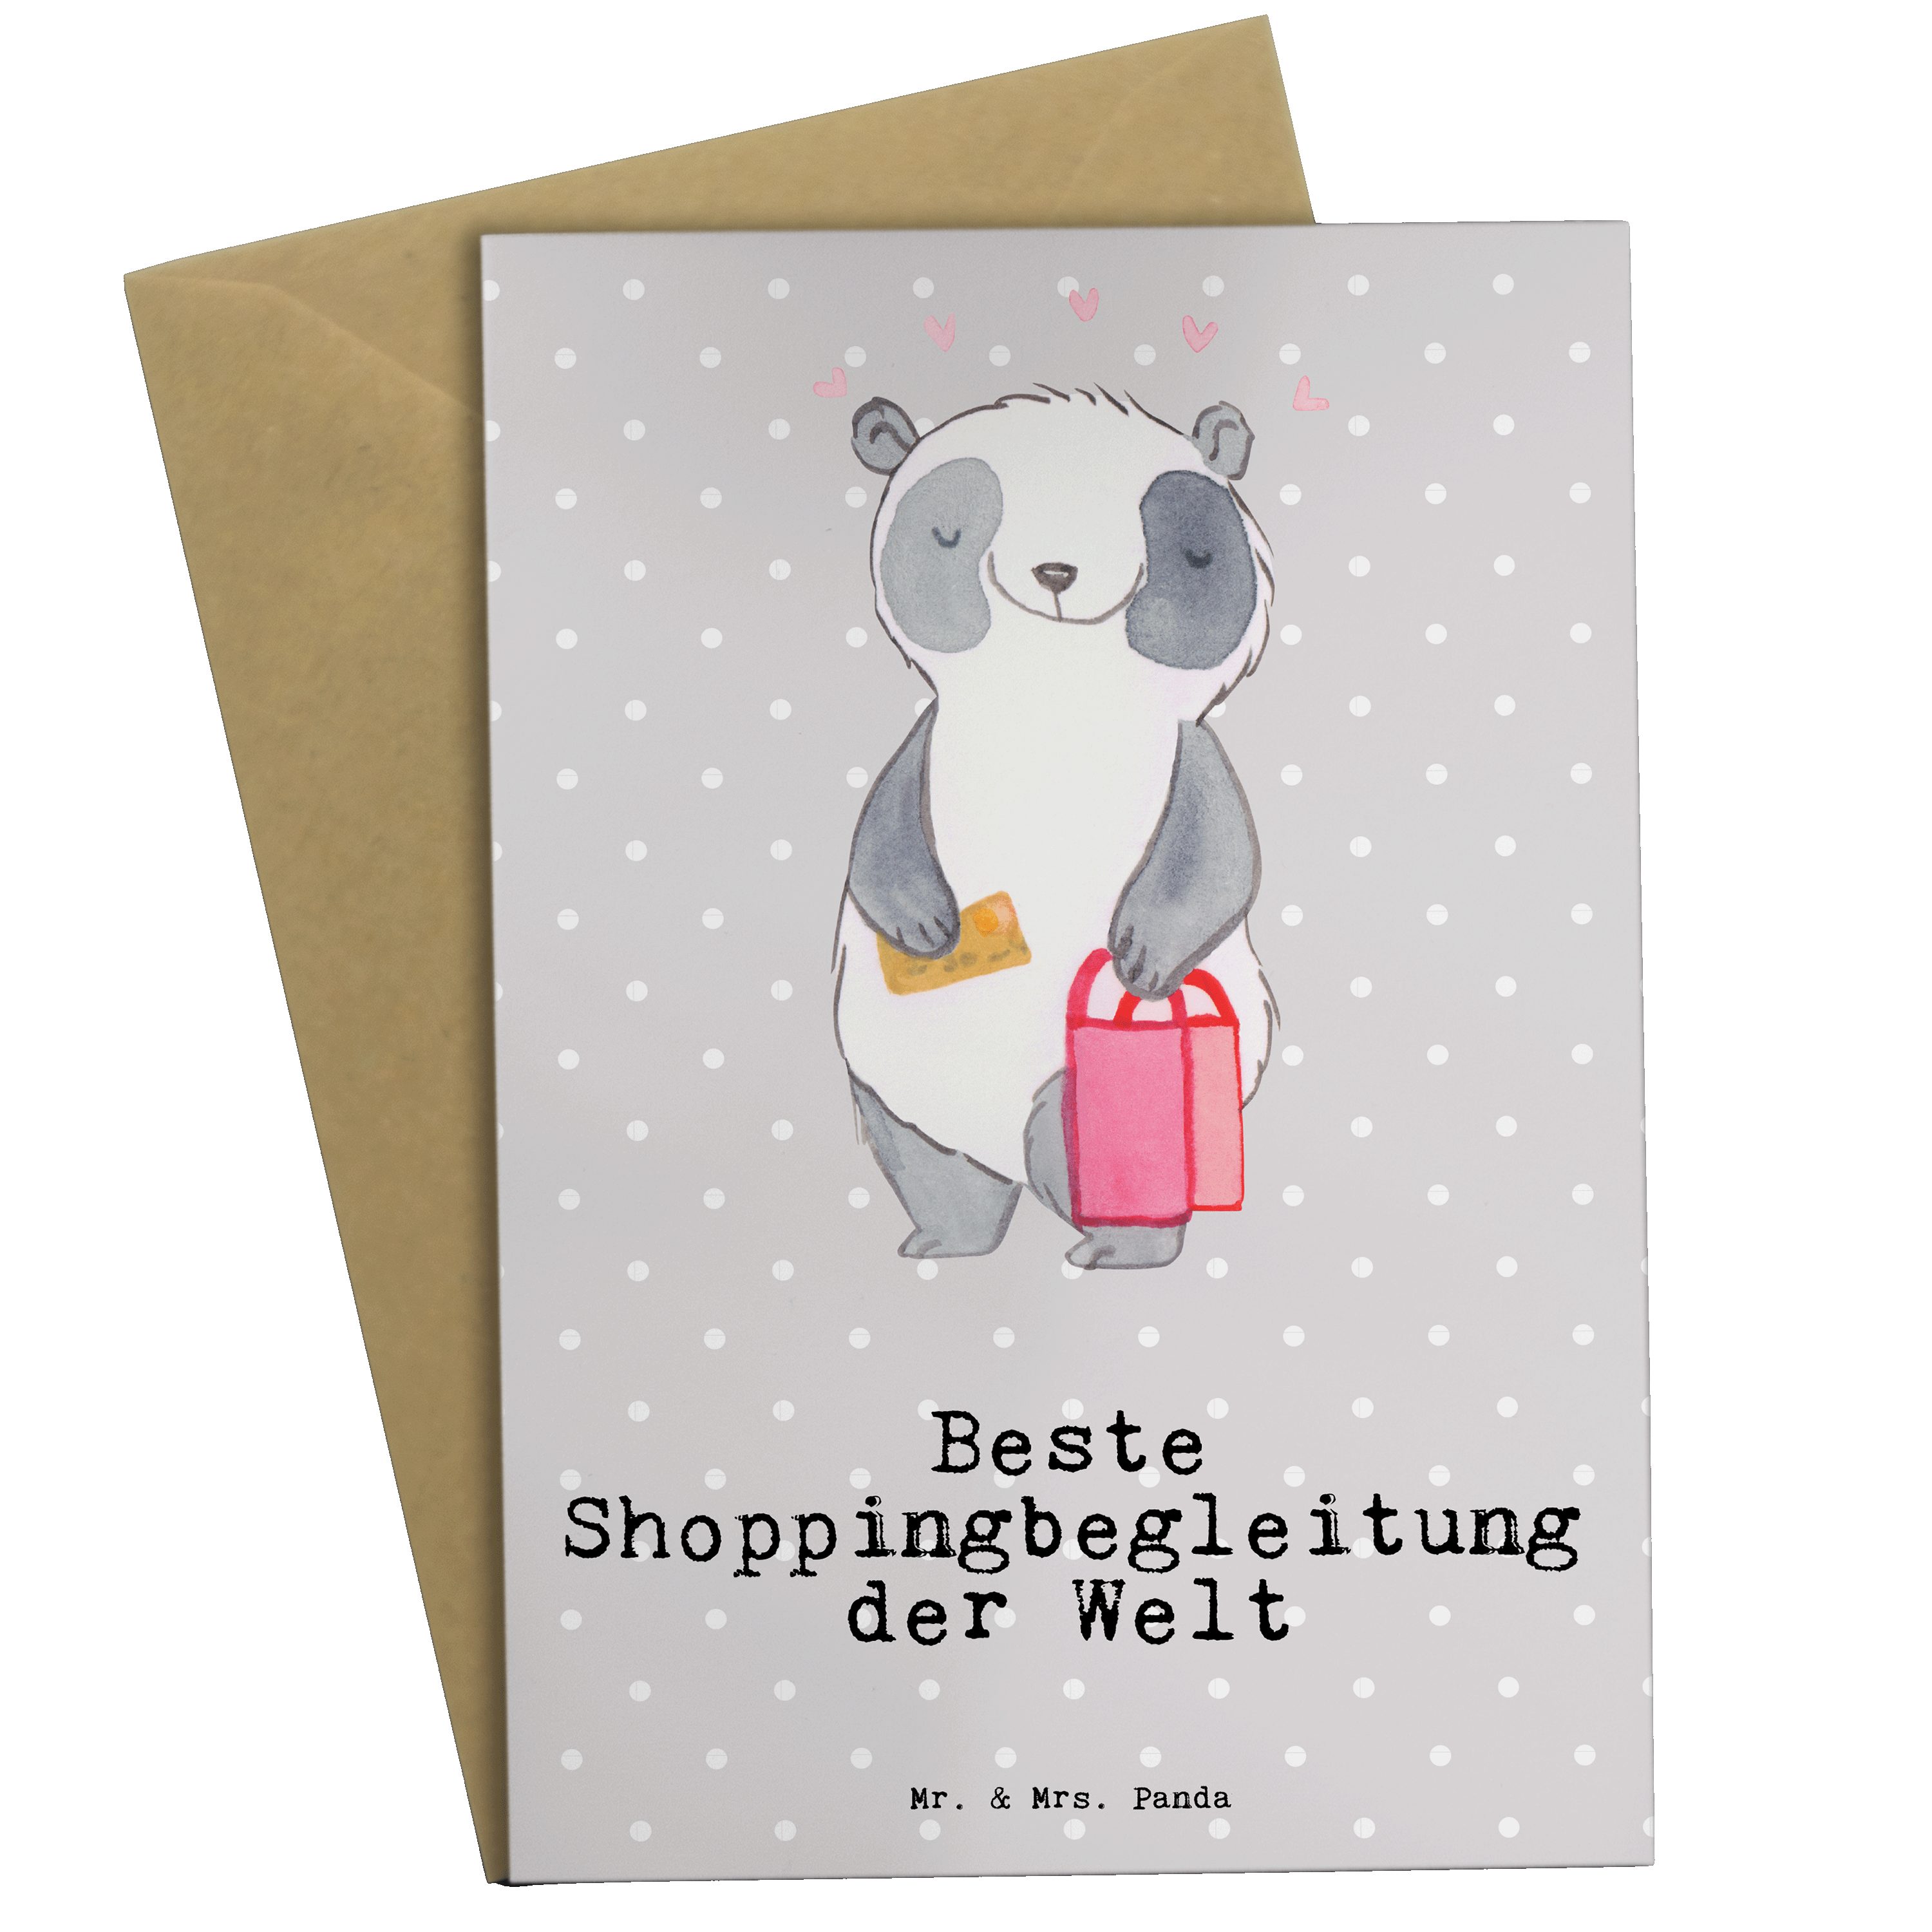 Mr. & Mrs. Panda Grußkarte Panda Beste Shoppingbegleitung der Welt - Grau Pastell - Geschenk, Ho